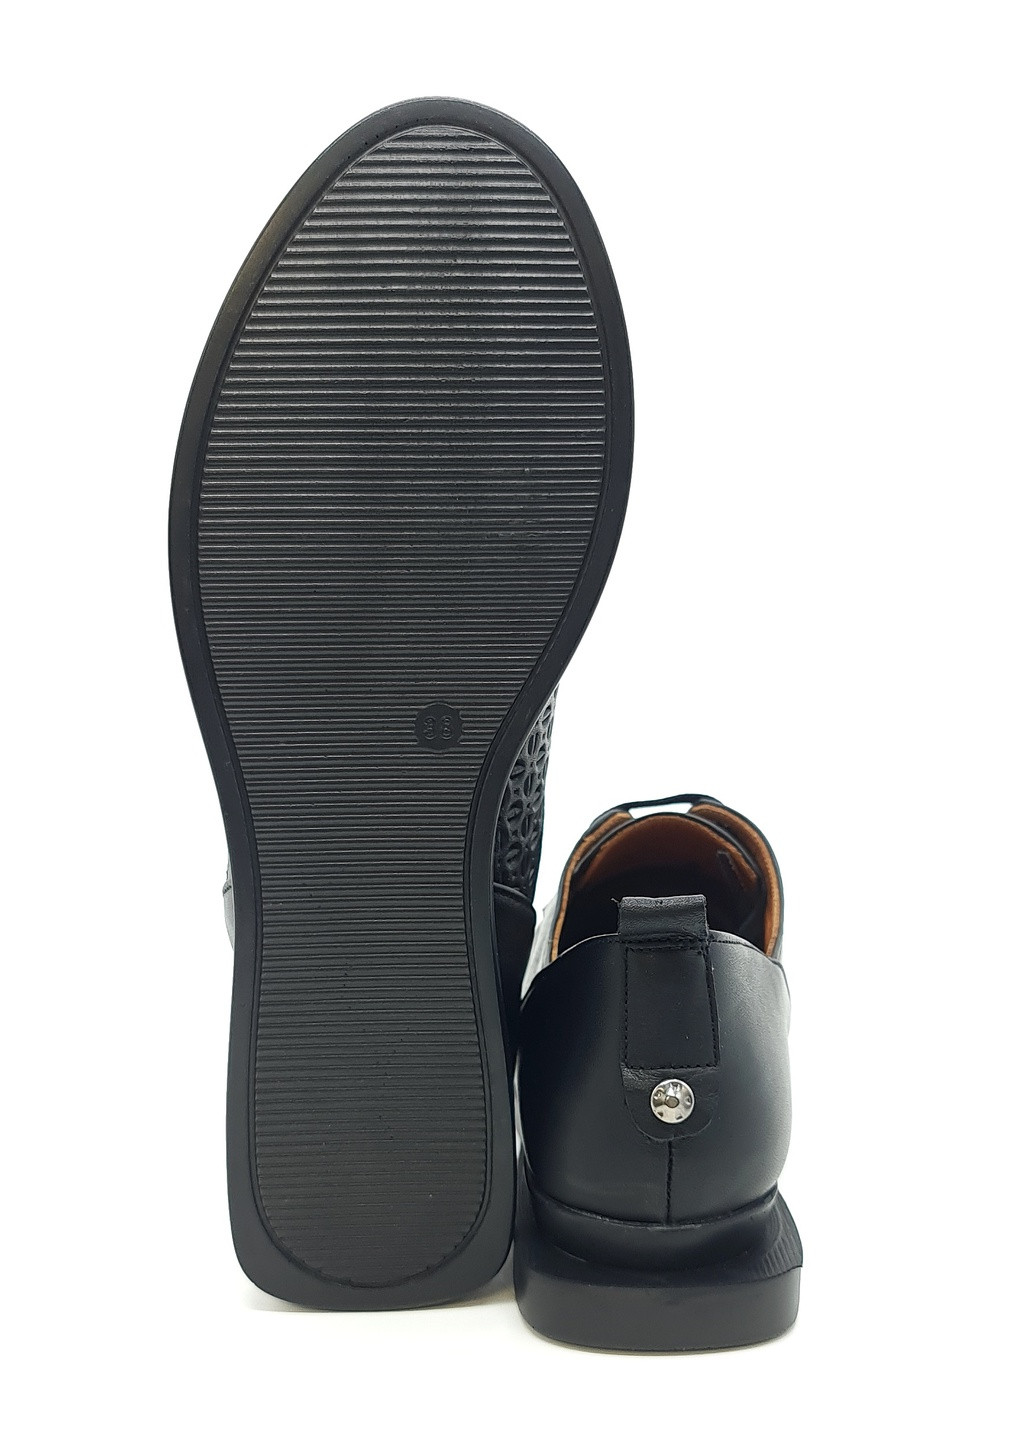 Женские туфли черные кожаные AL-17-1 23,5 см (р) Anna Lucci